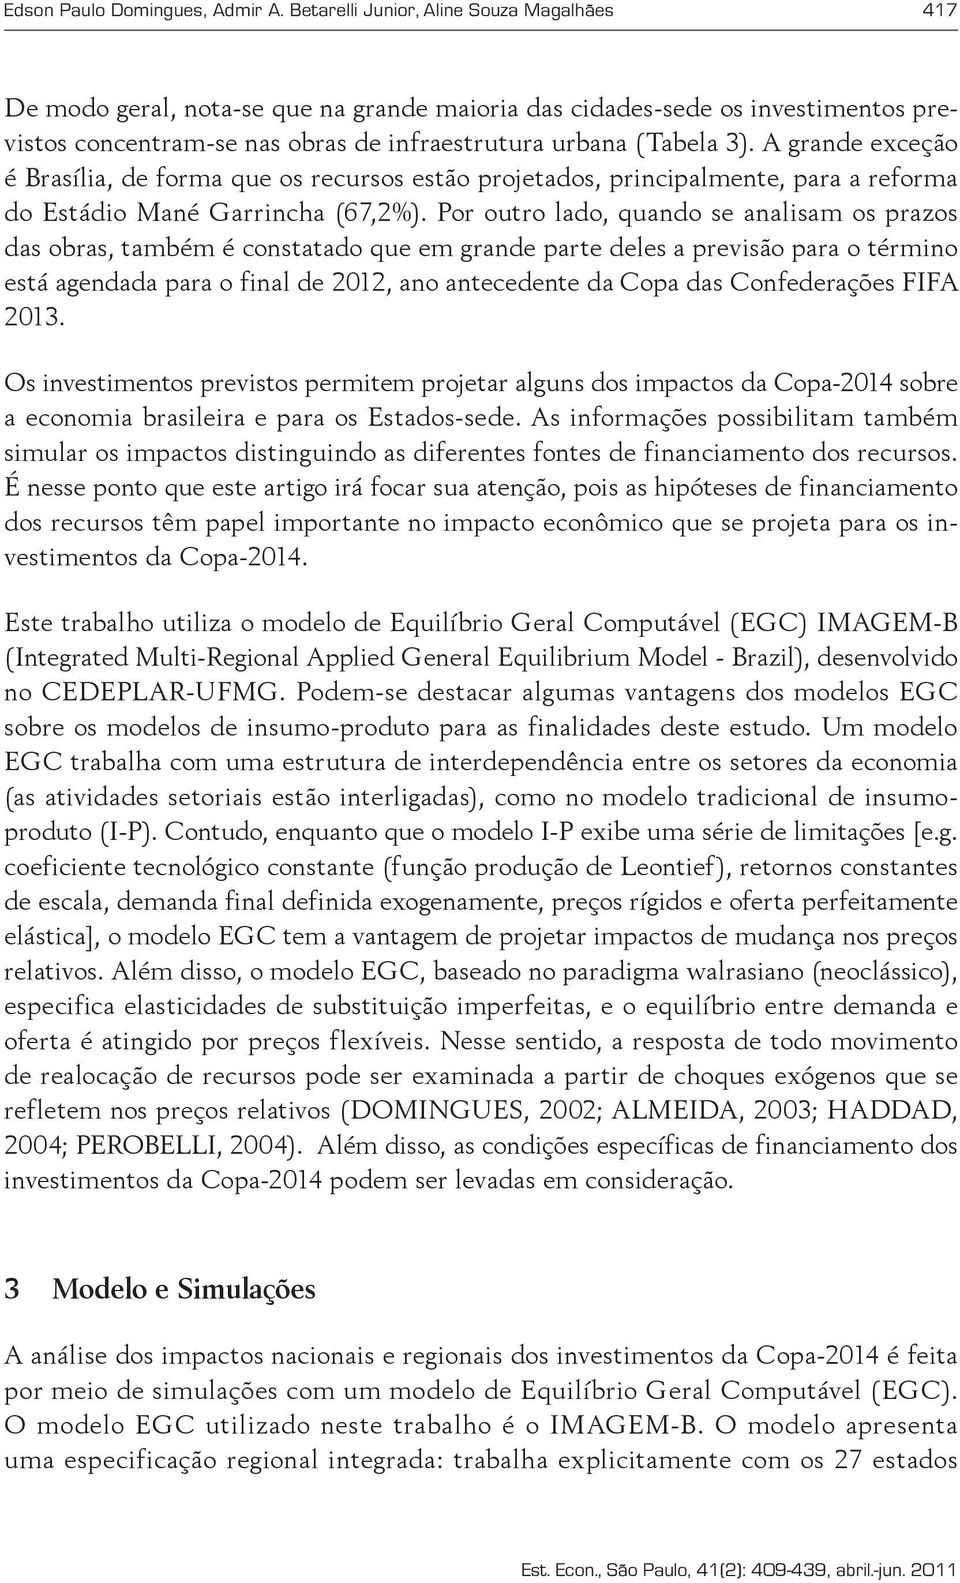 A grande exceção é Brasília, de forma que os recursos estão projetados, principalmente, para a reforma do Estádio Mané Garrincha (67,2%).